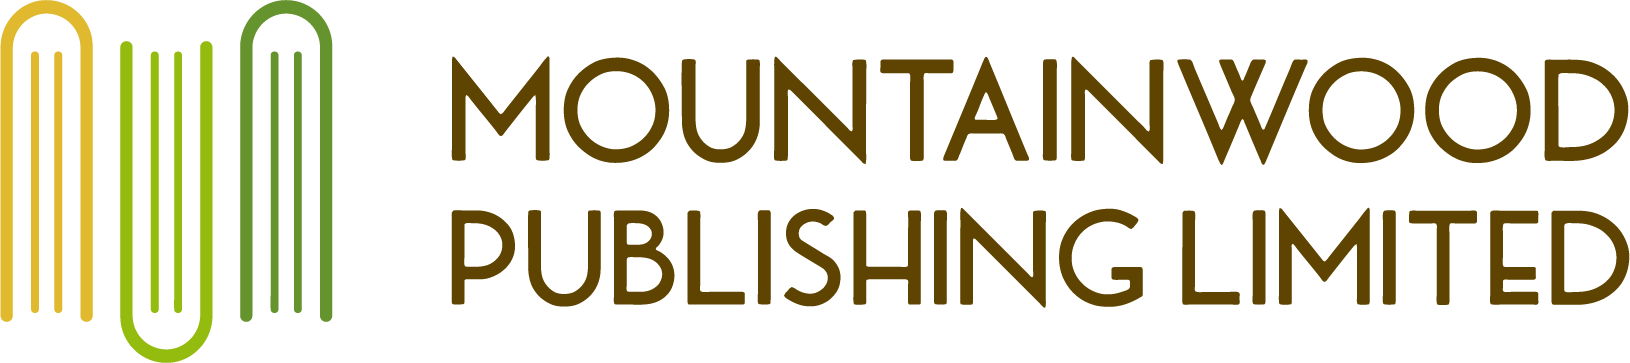 Mountainwood Publishing Limited